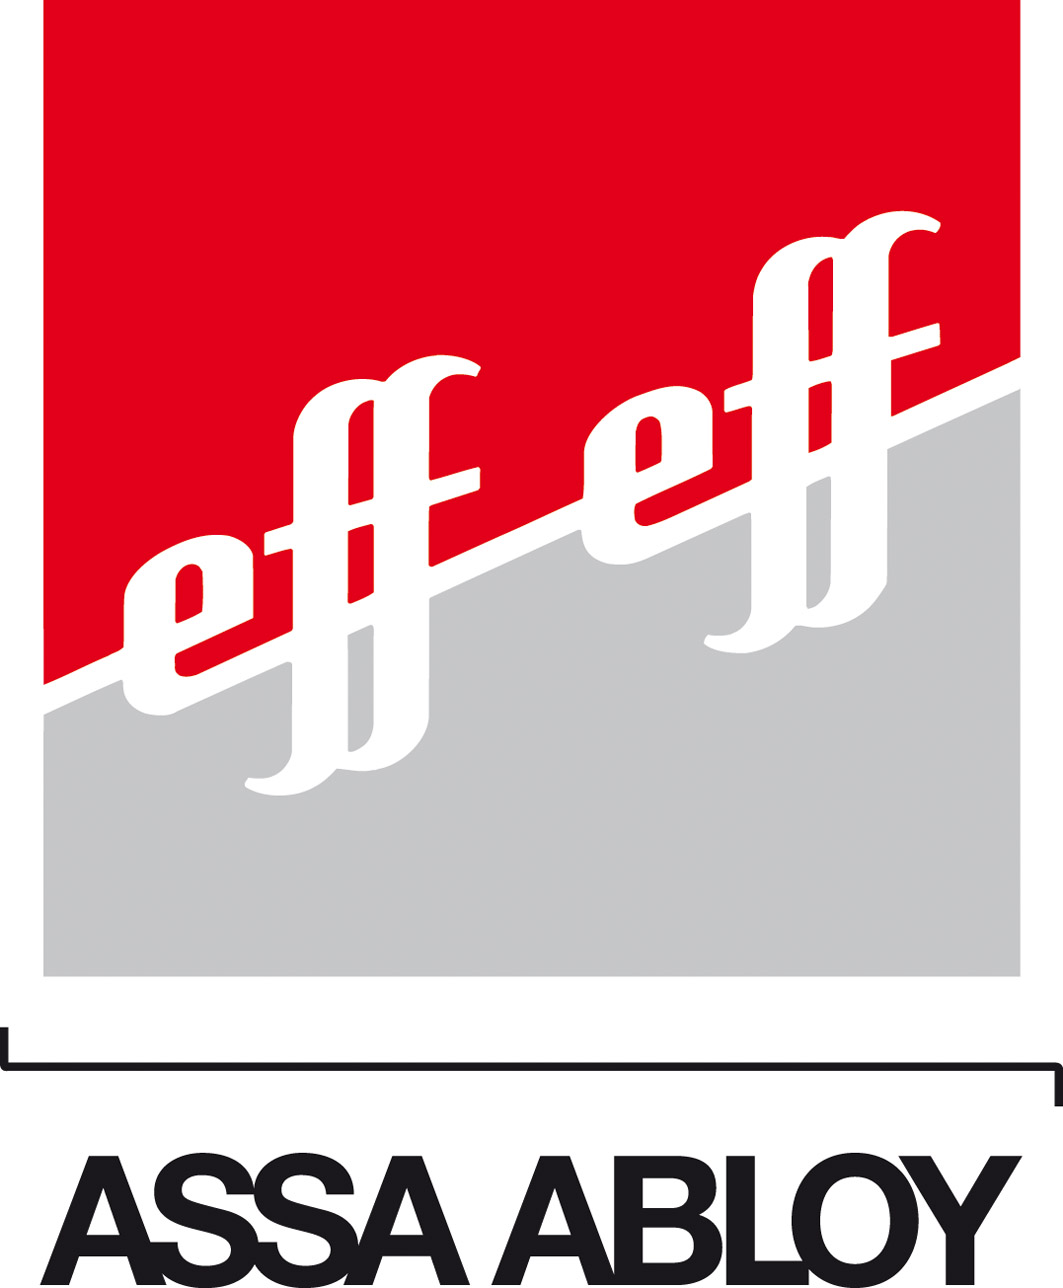 Assa Abloy EffEff
unsere altbewährte Marke für E-öffner
und noch vieles mehr
Zutrittskontrolle, Elektr Schlösser ....